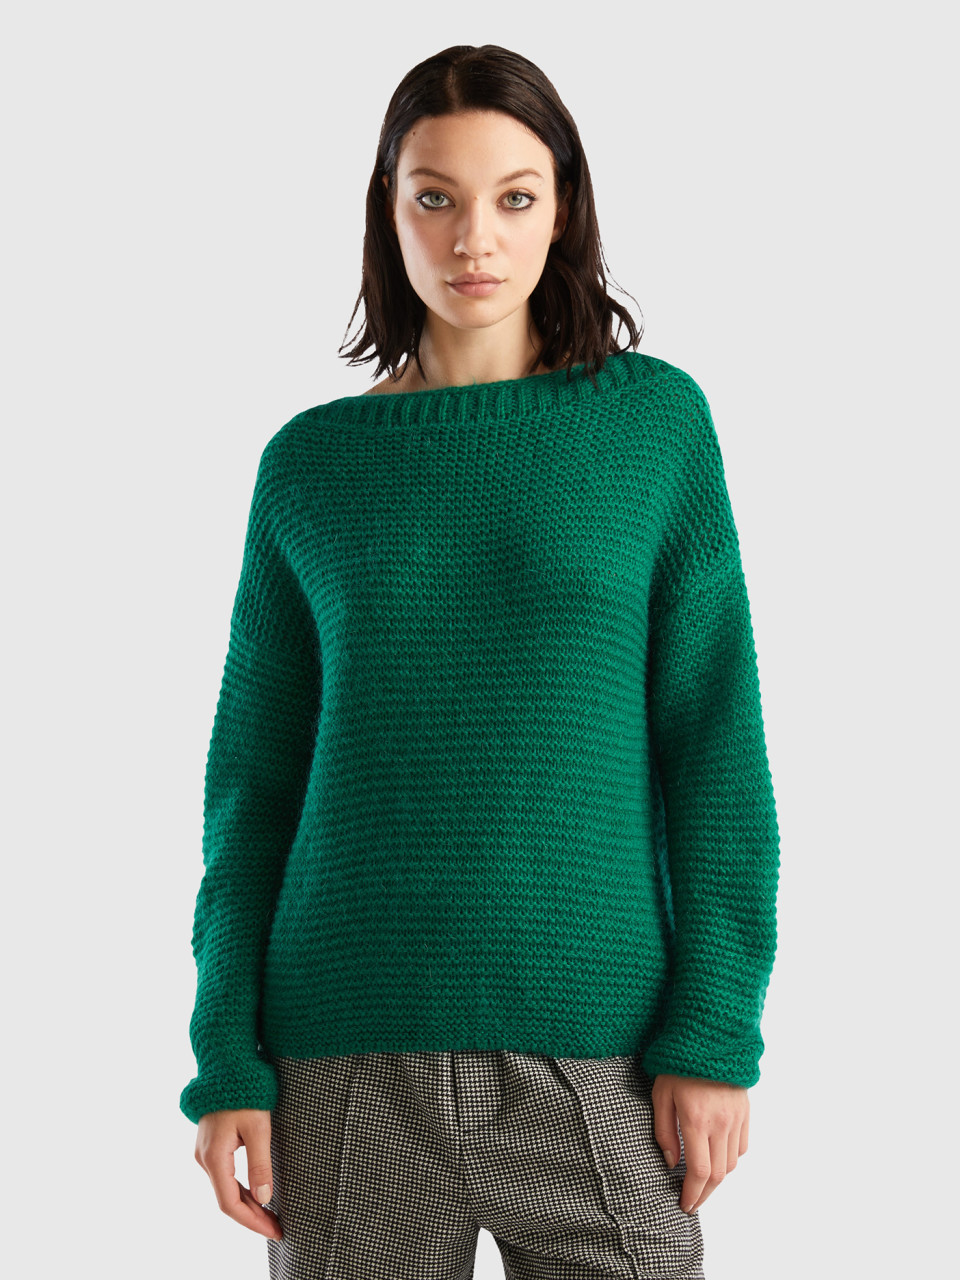 Benetton, Boat Neck Sweater, Green, Women